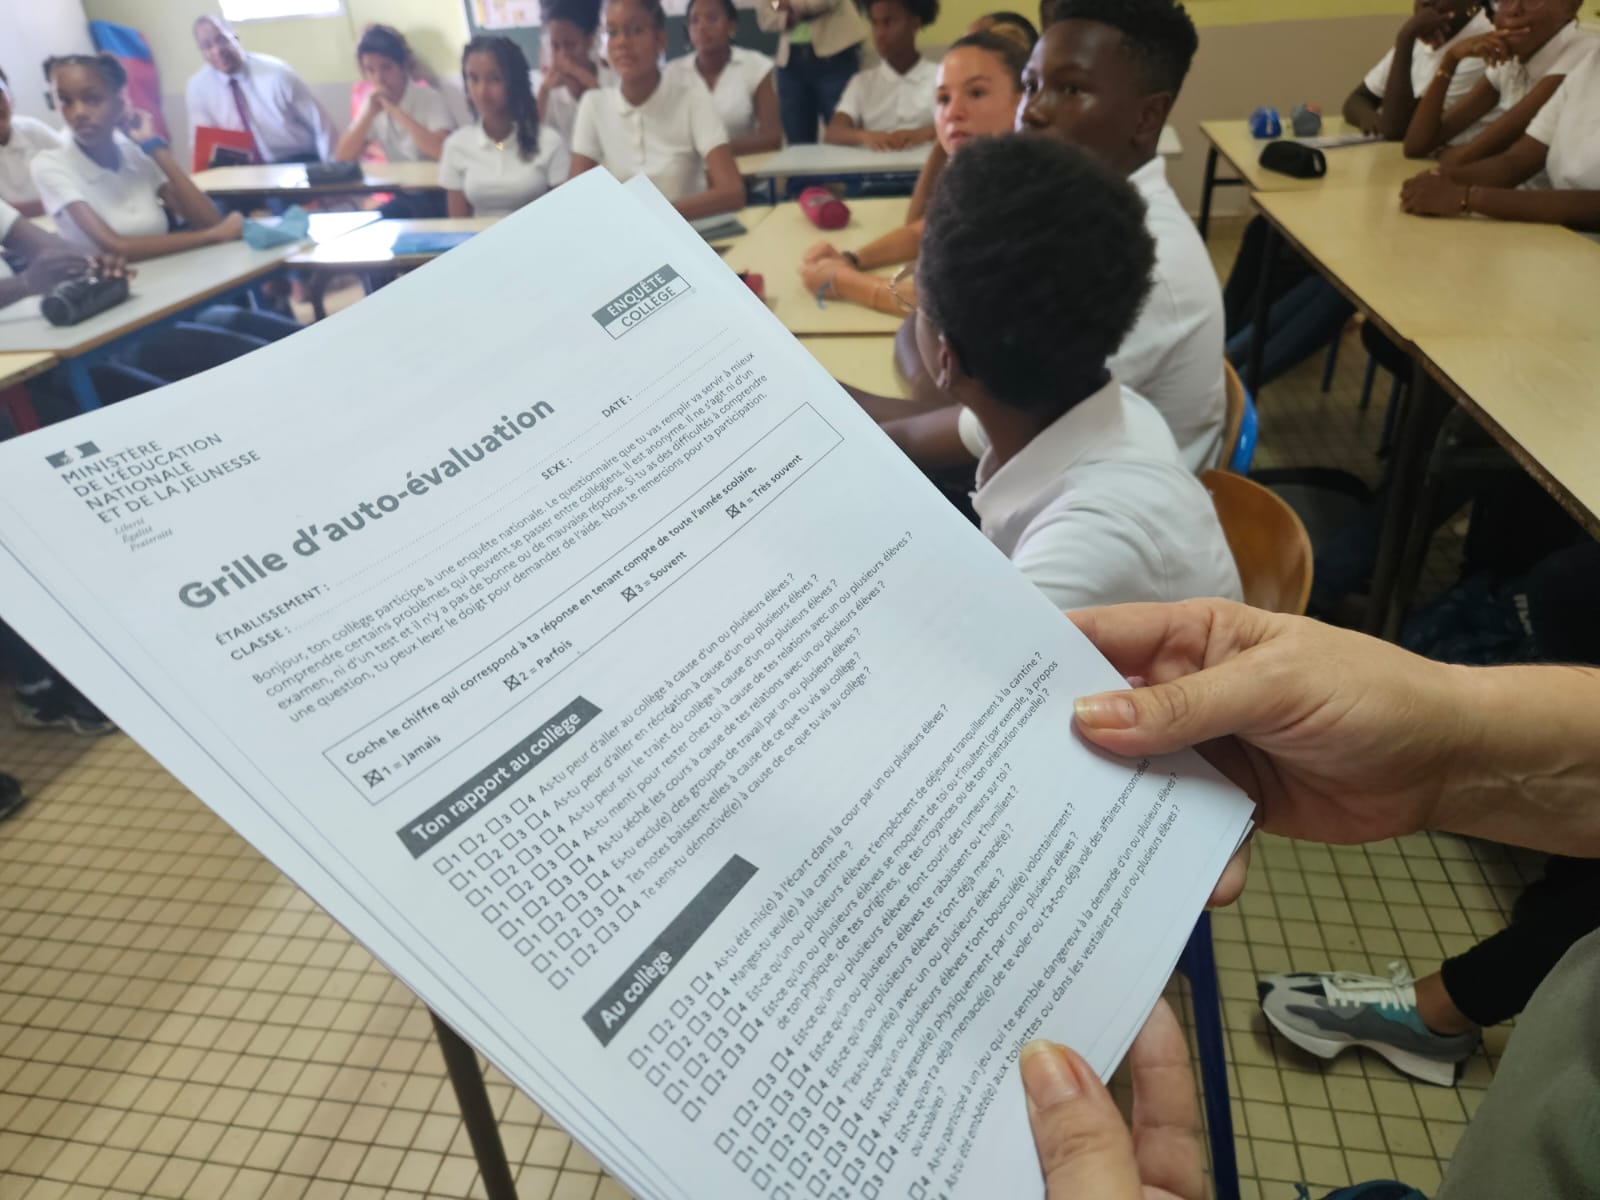     Harcèlement scolaire : le questionnaire d’auto-évaluation distribué au collège de Ducos

